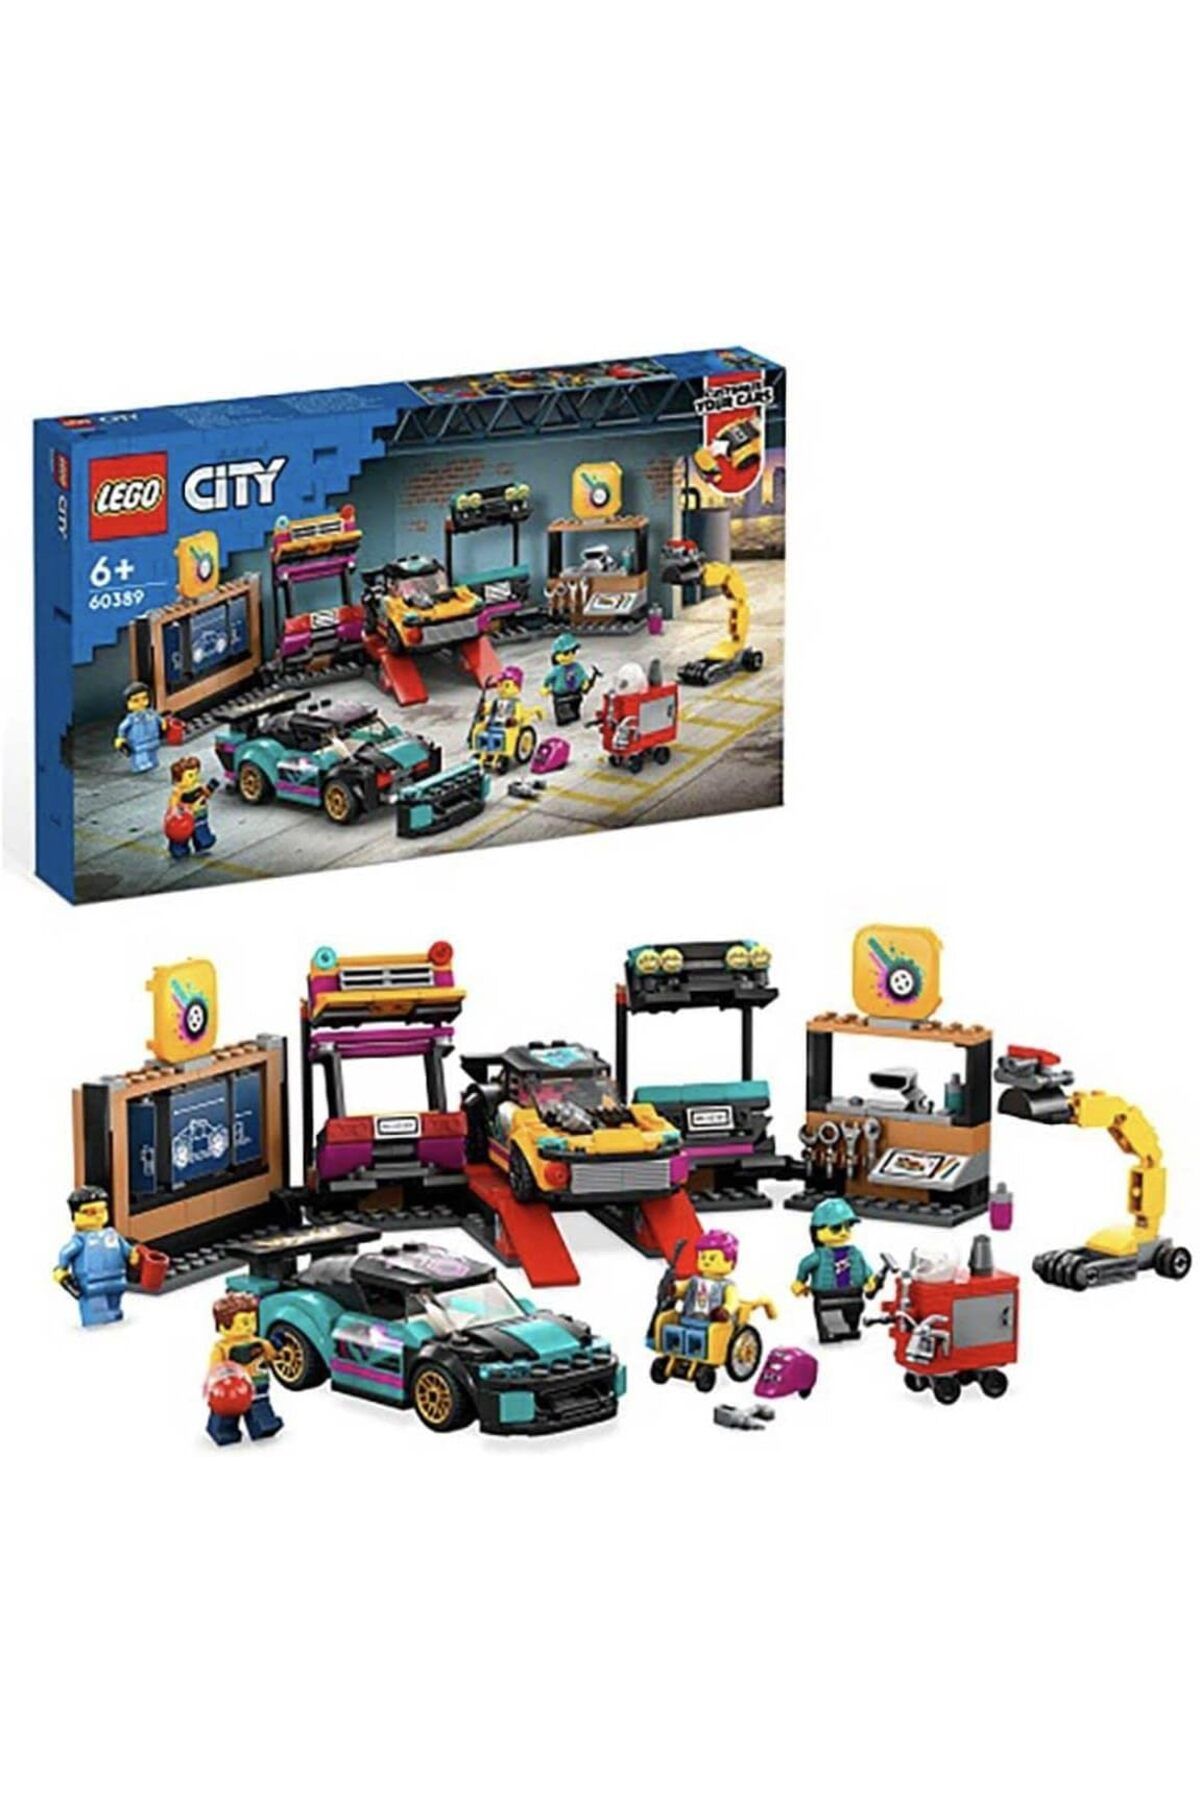 LEGO ® City Araç Modifiye Atölyesi 60389 - 6 Yaş ve Üzeri Çocuklar için Yapım Seti (507 Parça)